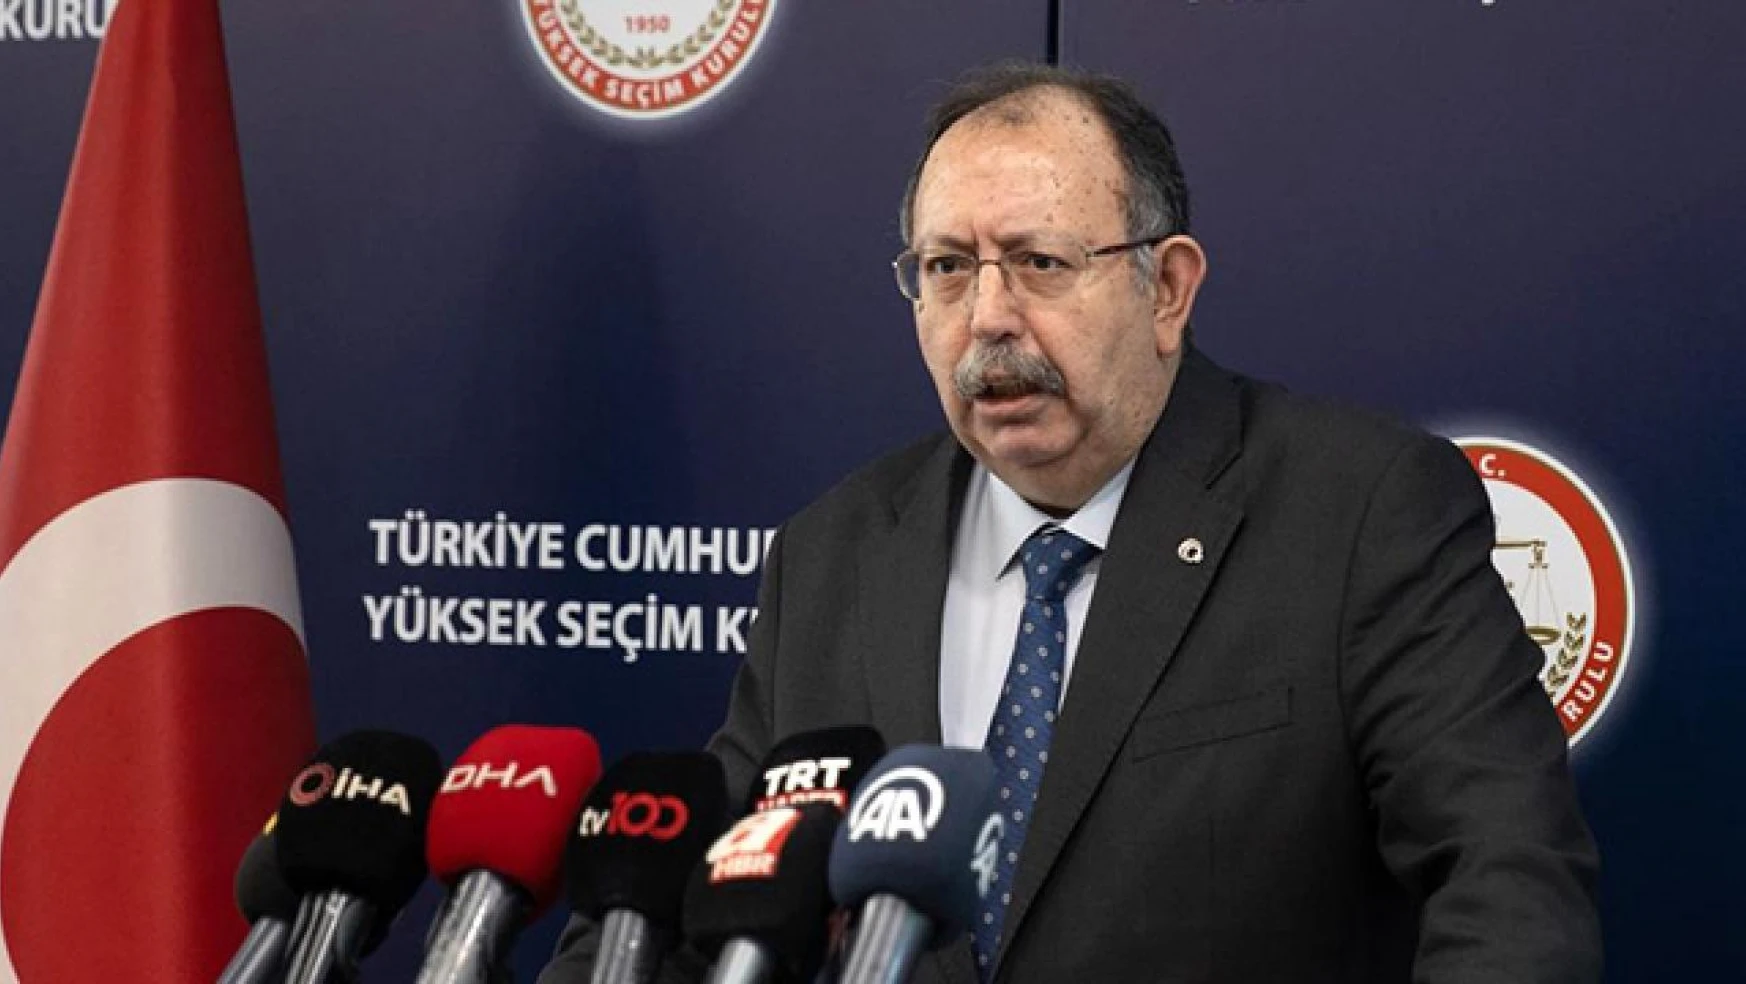 YSK Başkanı Yener: 'yerel seçimlere 36 siyasi parti katılacak'